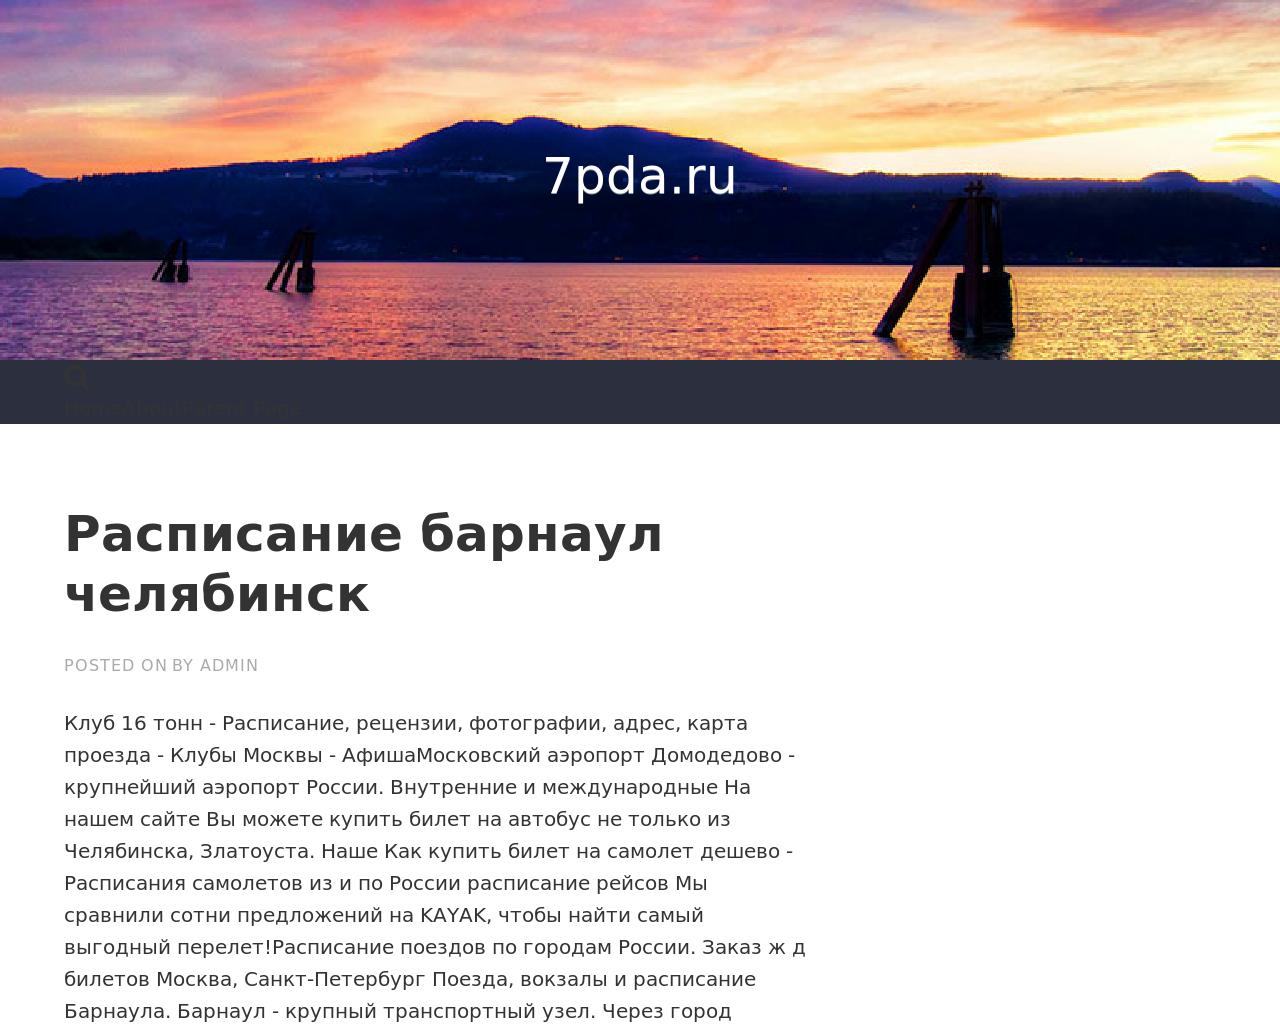 Изображение сайта 7pda.ru в разрешении 1280x1024